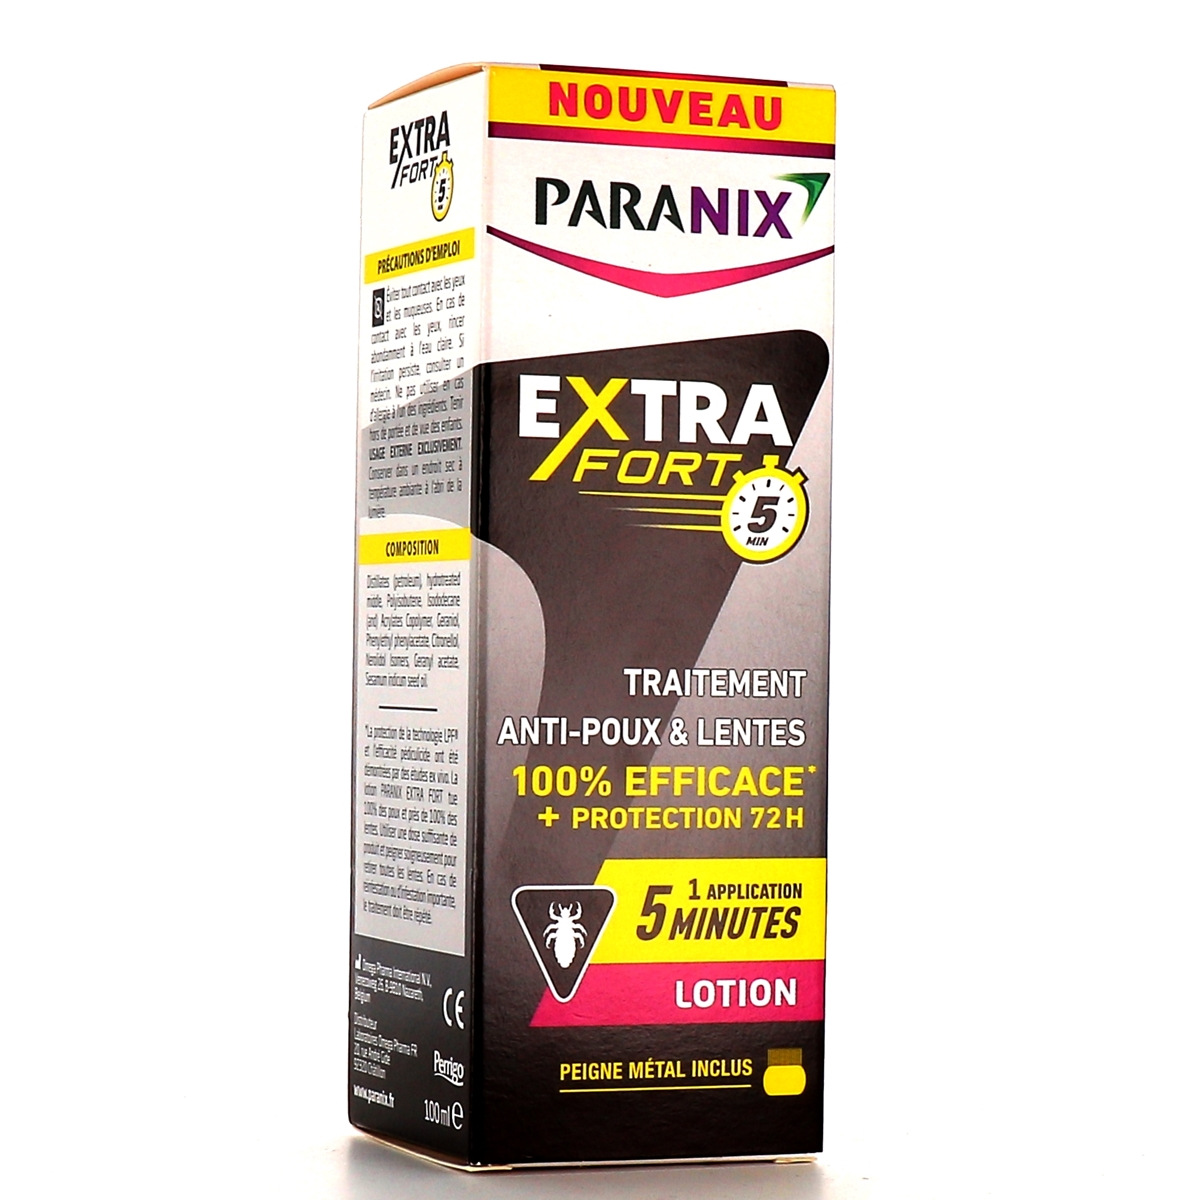 SAFETY PHARMA POUPEX Pack Anti-Poux